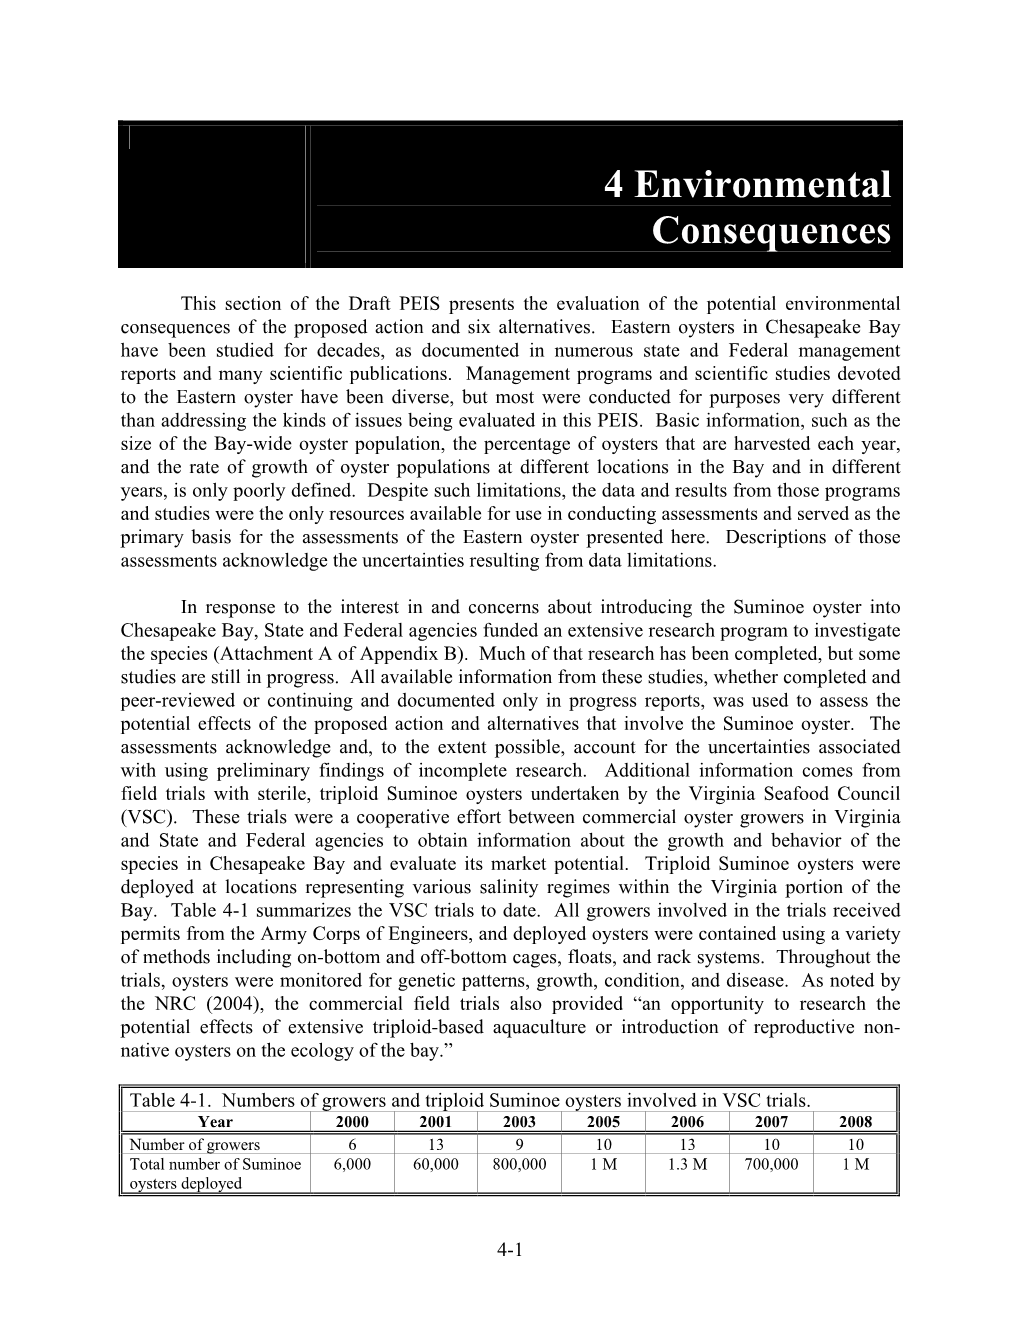 4 Environmental Consequences